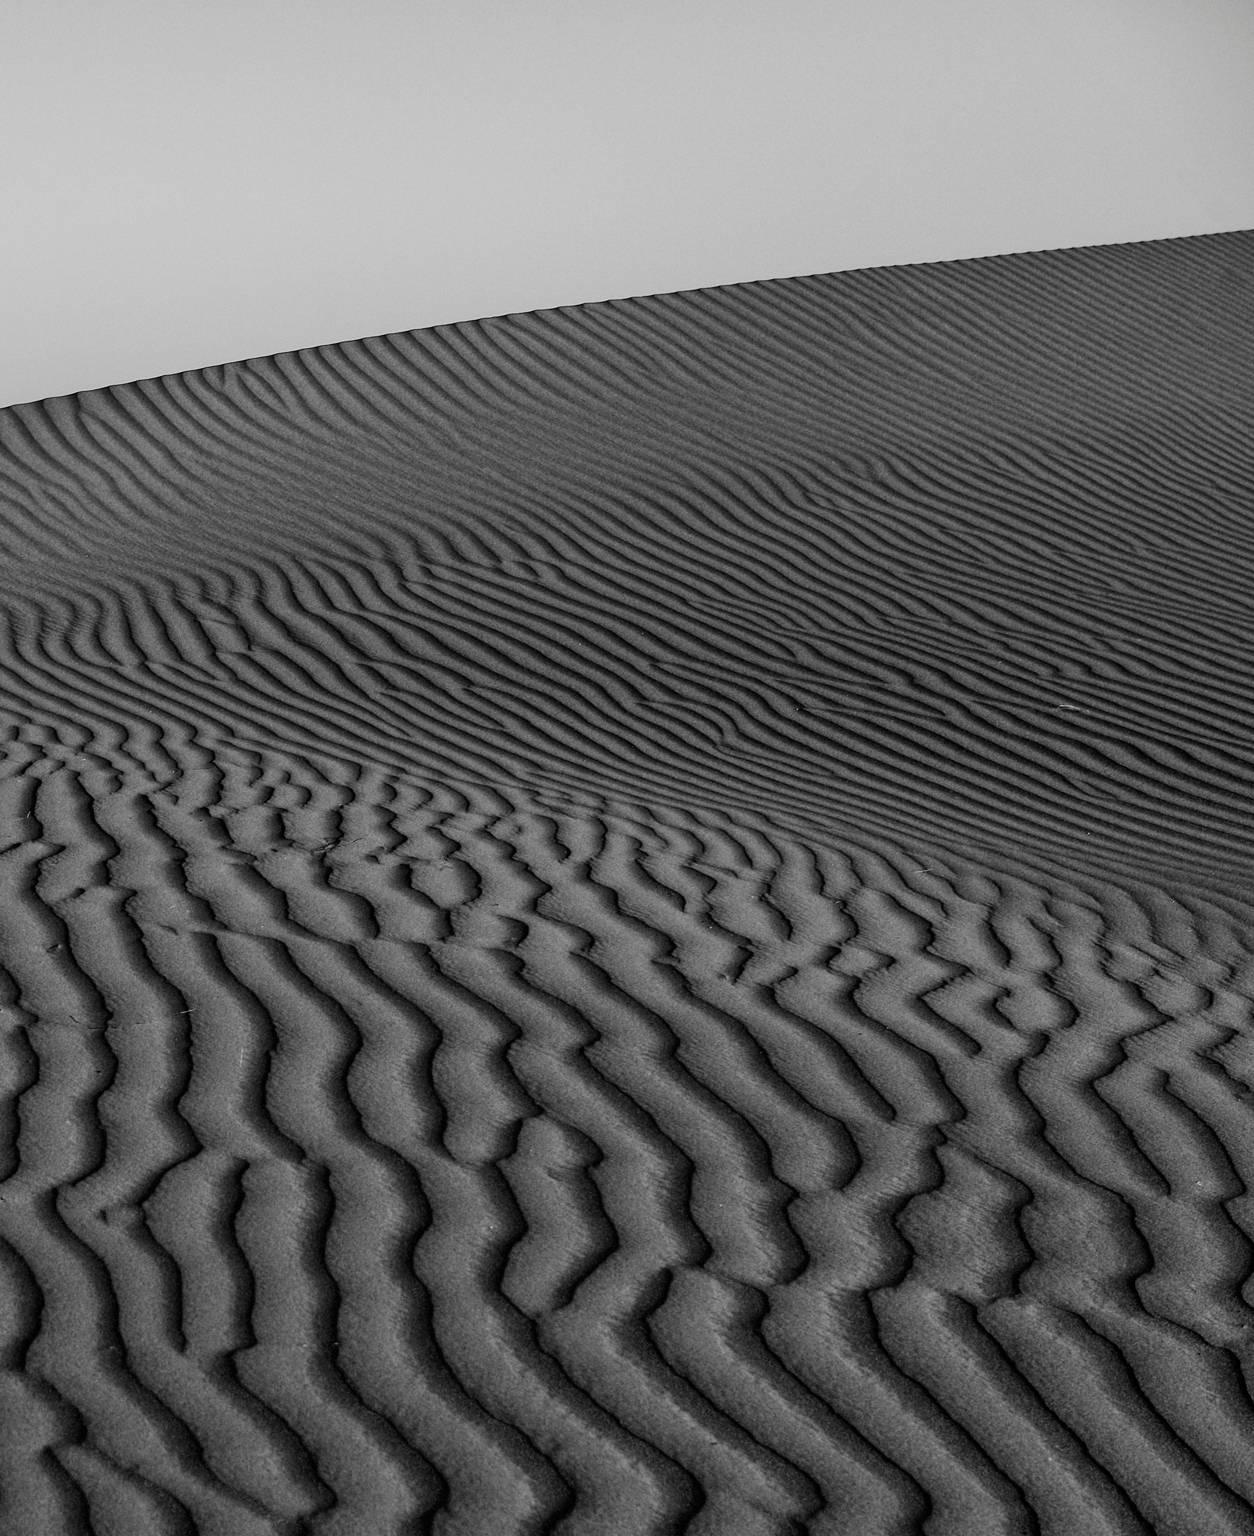 Wahiba Sands #2 - Black Landscape Photograph by Ian Tudhope